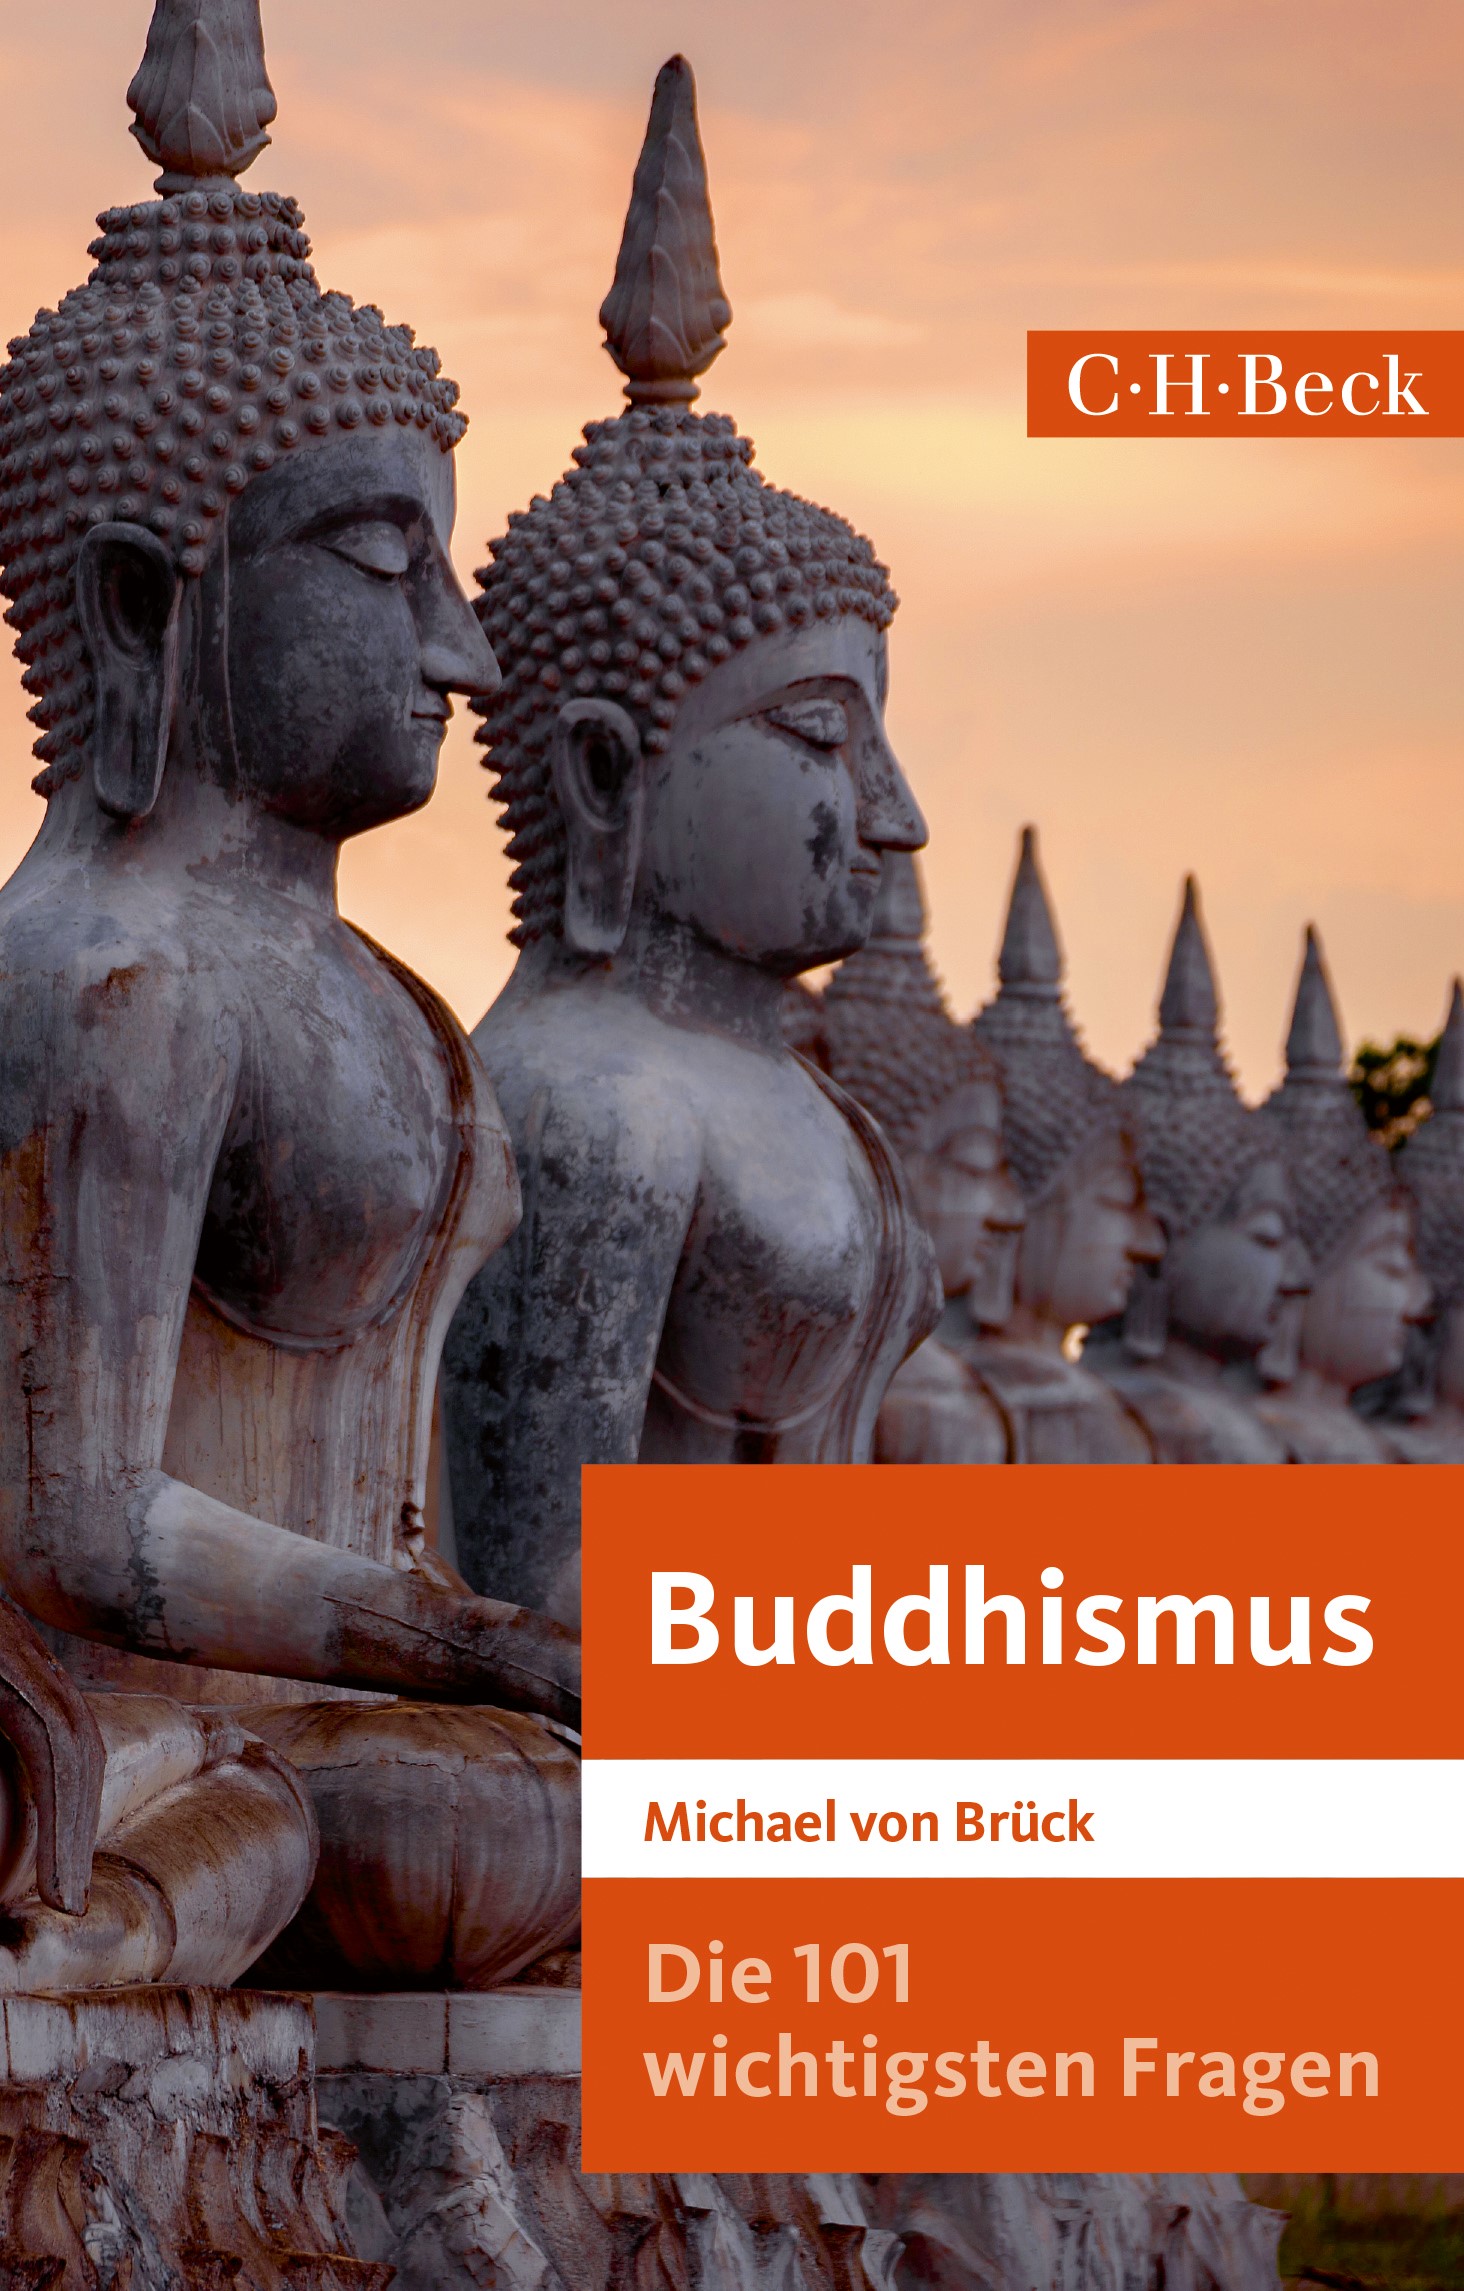 Cover: Brück, Michael von, Die 101 wichtigsten Fragen: Buddhismus